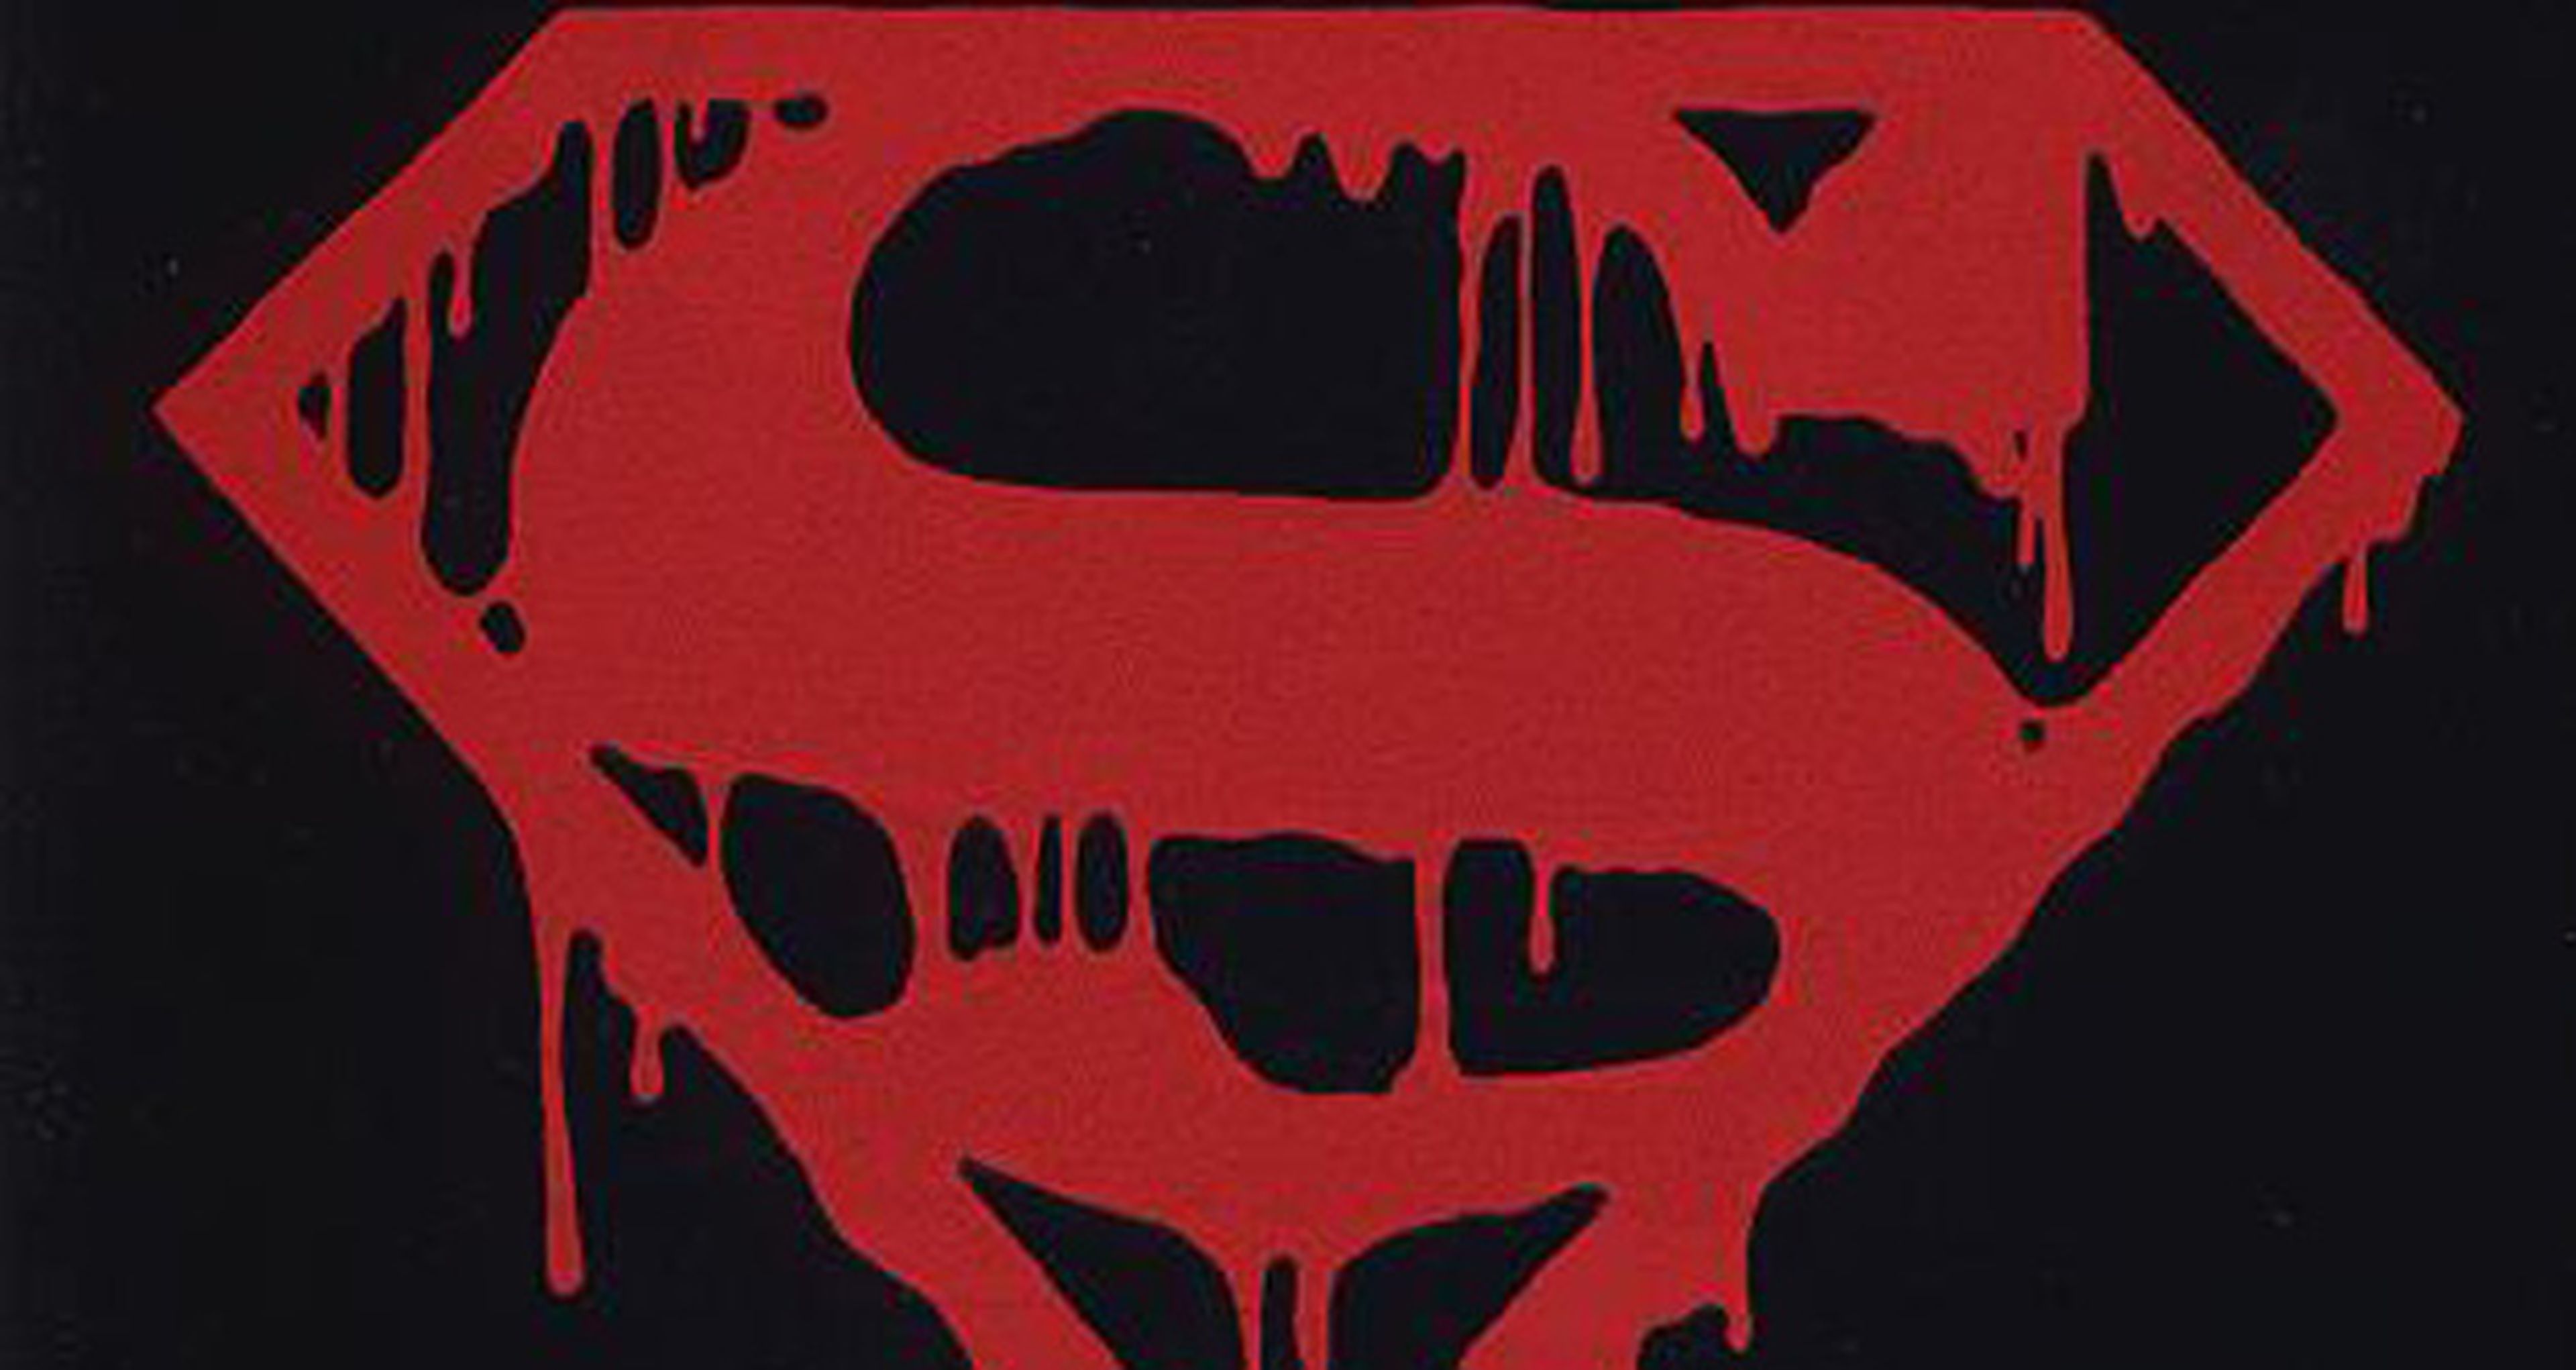 Los Mejores Cómics: La Muerte de Superman